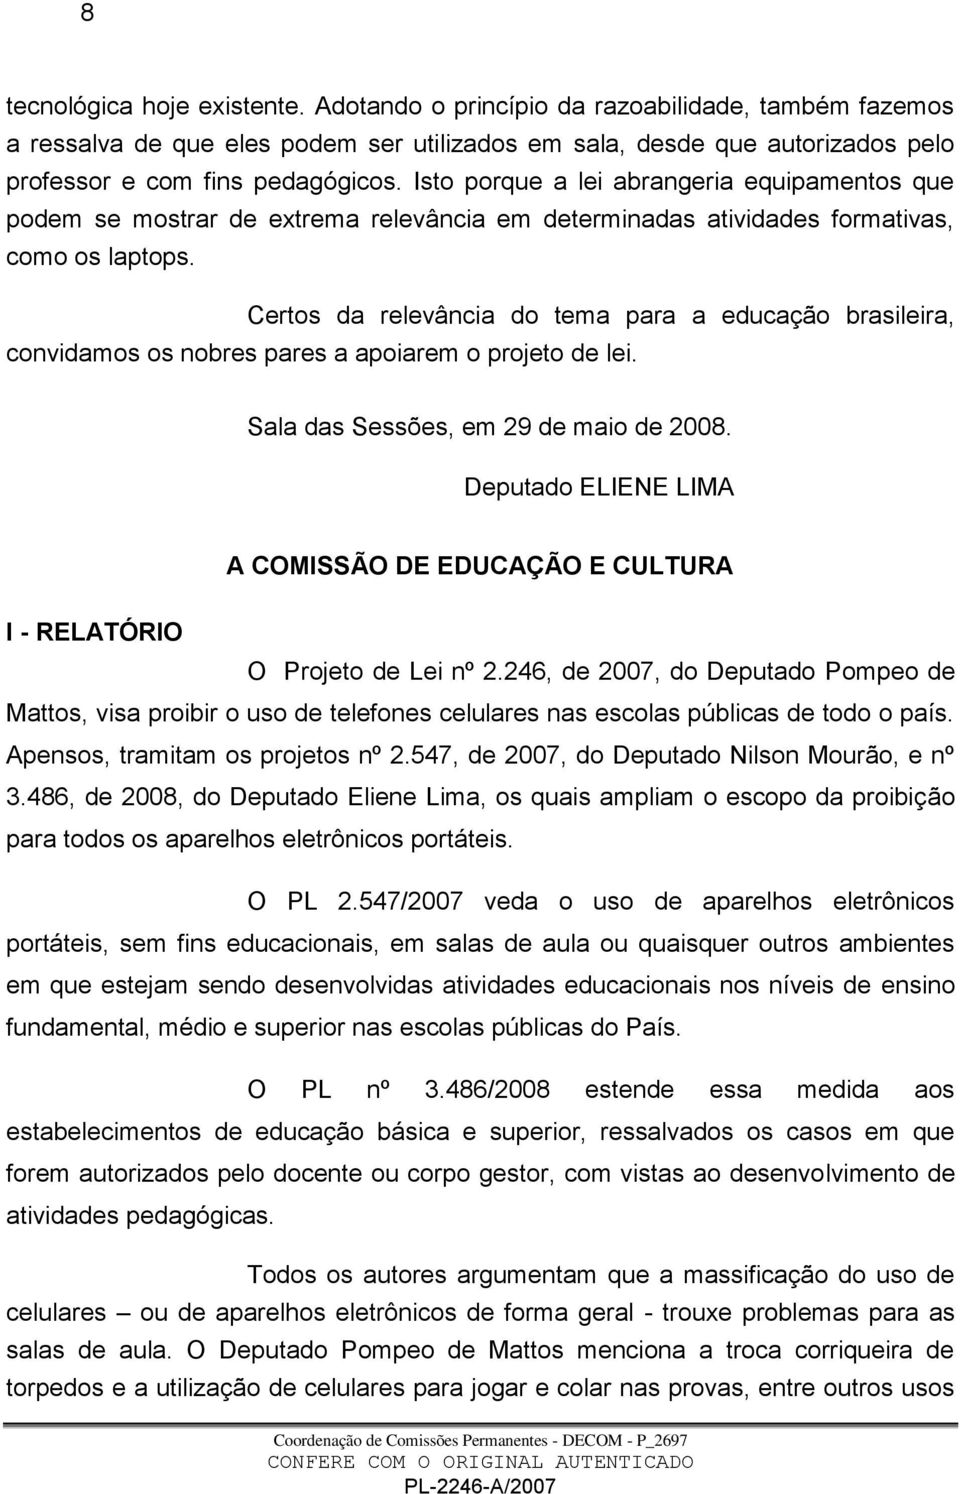 Certos da relevância do tema para a educação brasileira, convidamos os nobres pares a apoiarem o projeto de lei. Sala das Sessões, em 29 de maio de 2008.